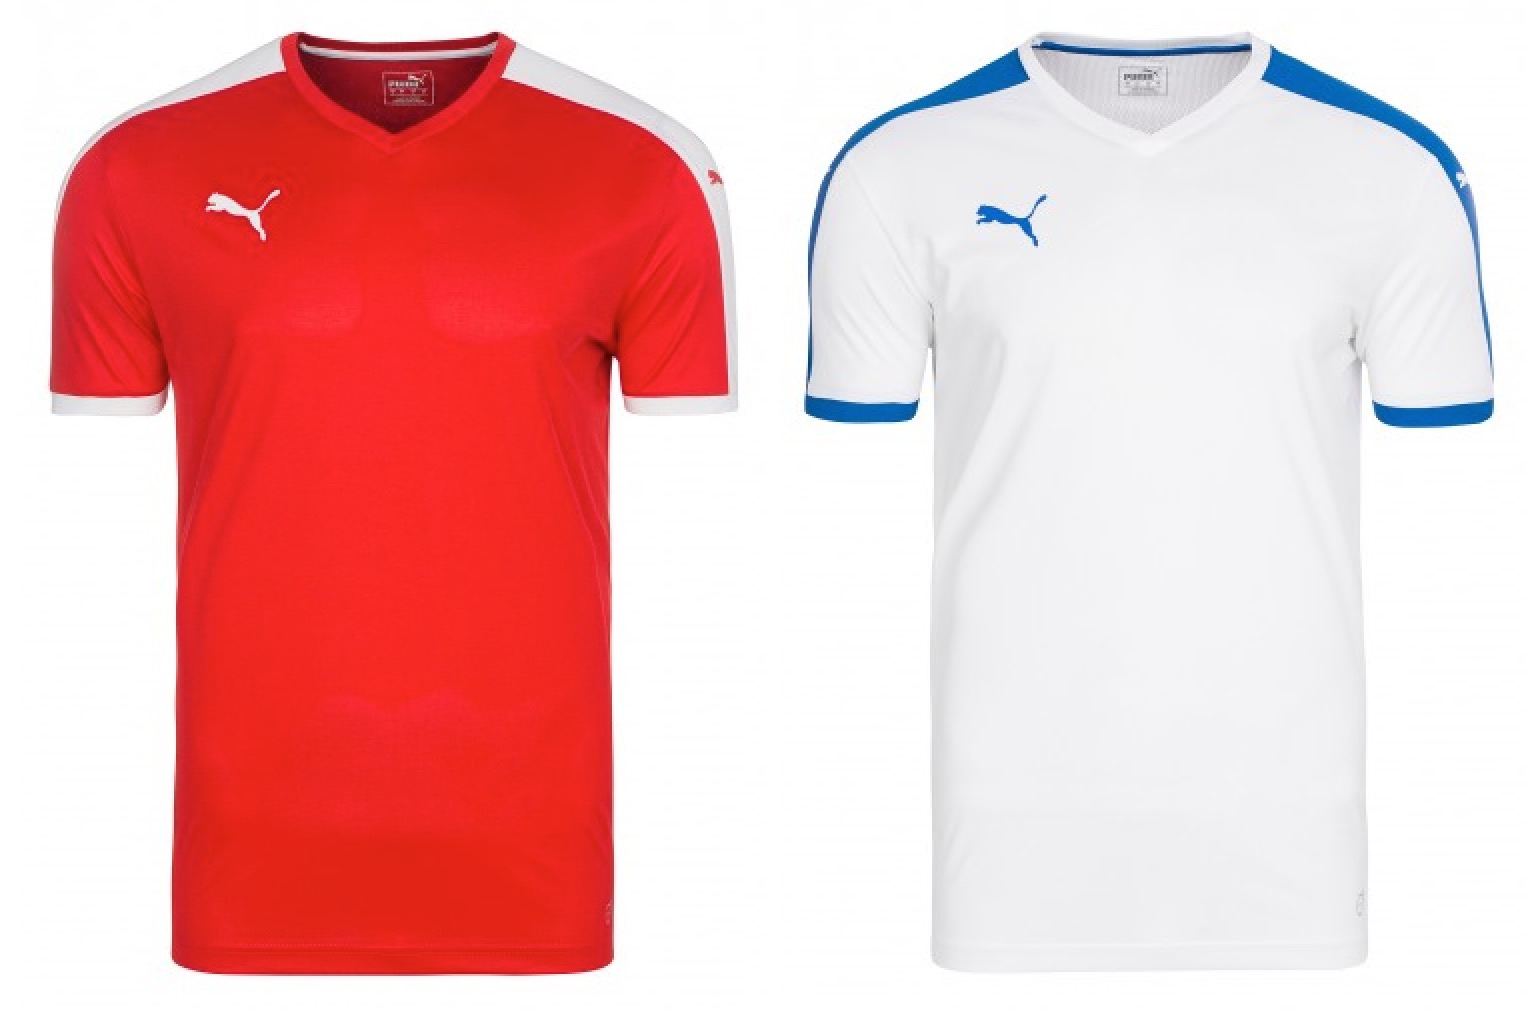 Outlet46: Verschiedene Puma Herren Sport T-Shirts/Trikots ab nur 9,99 Euro (MBW: 19,- Euro)